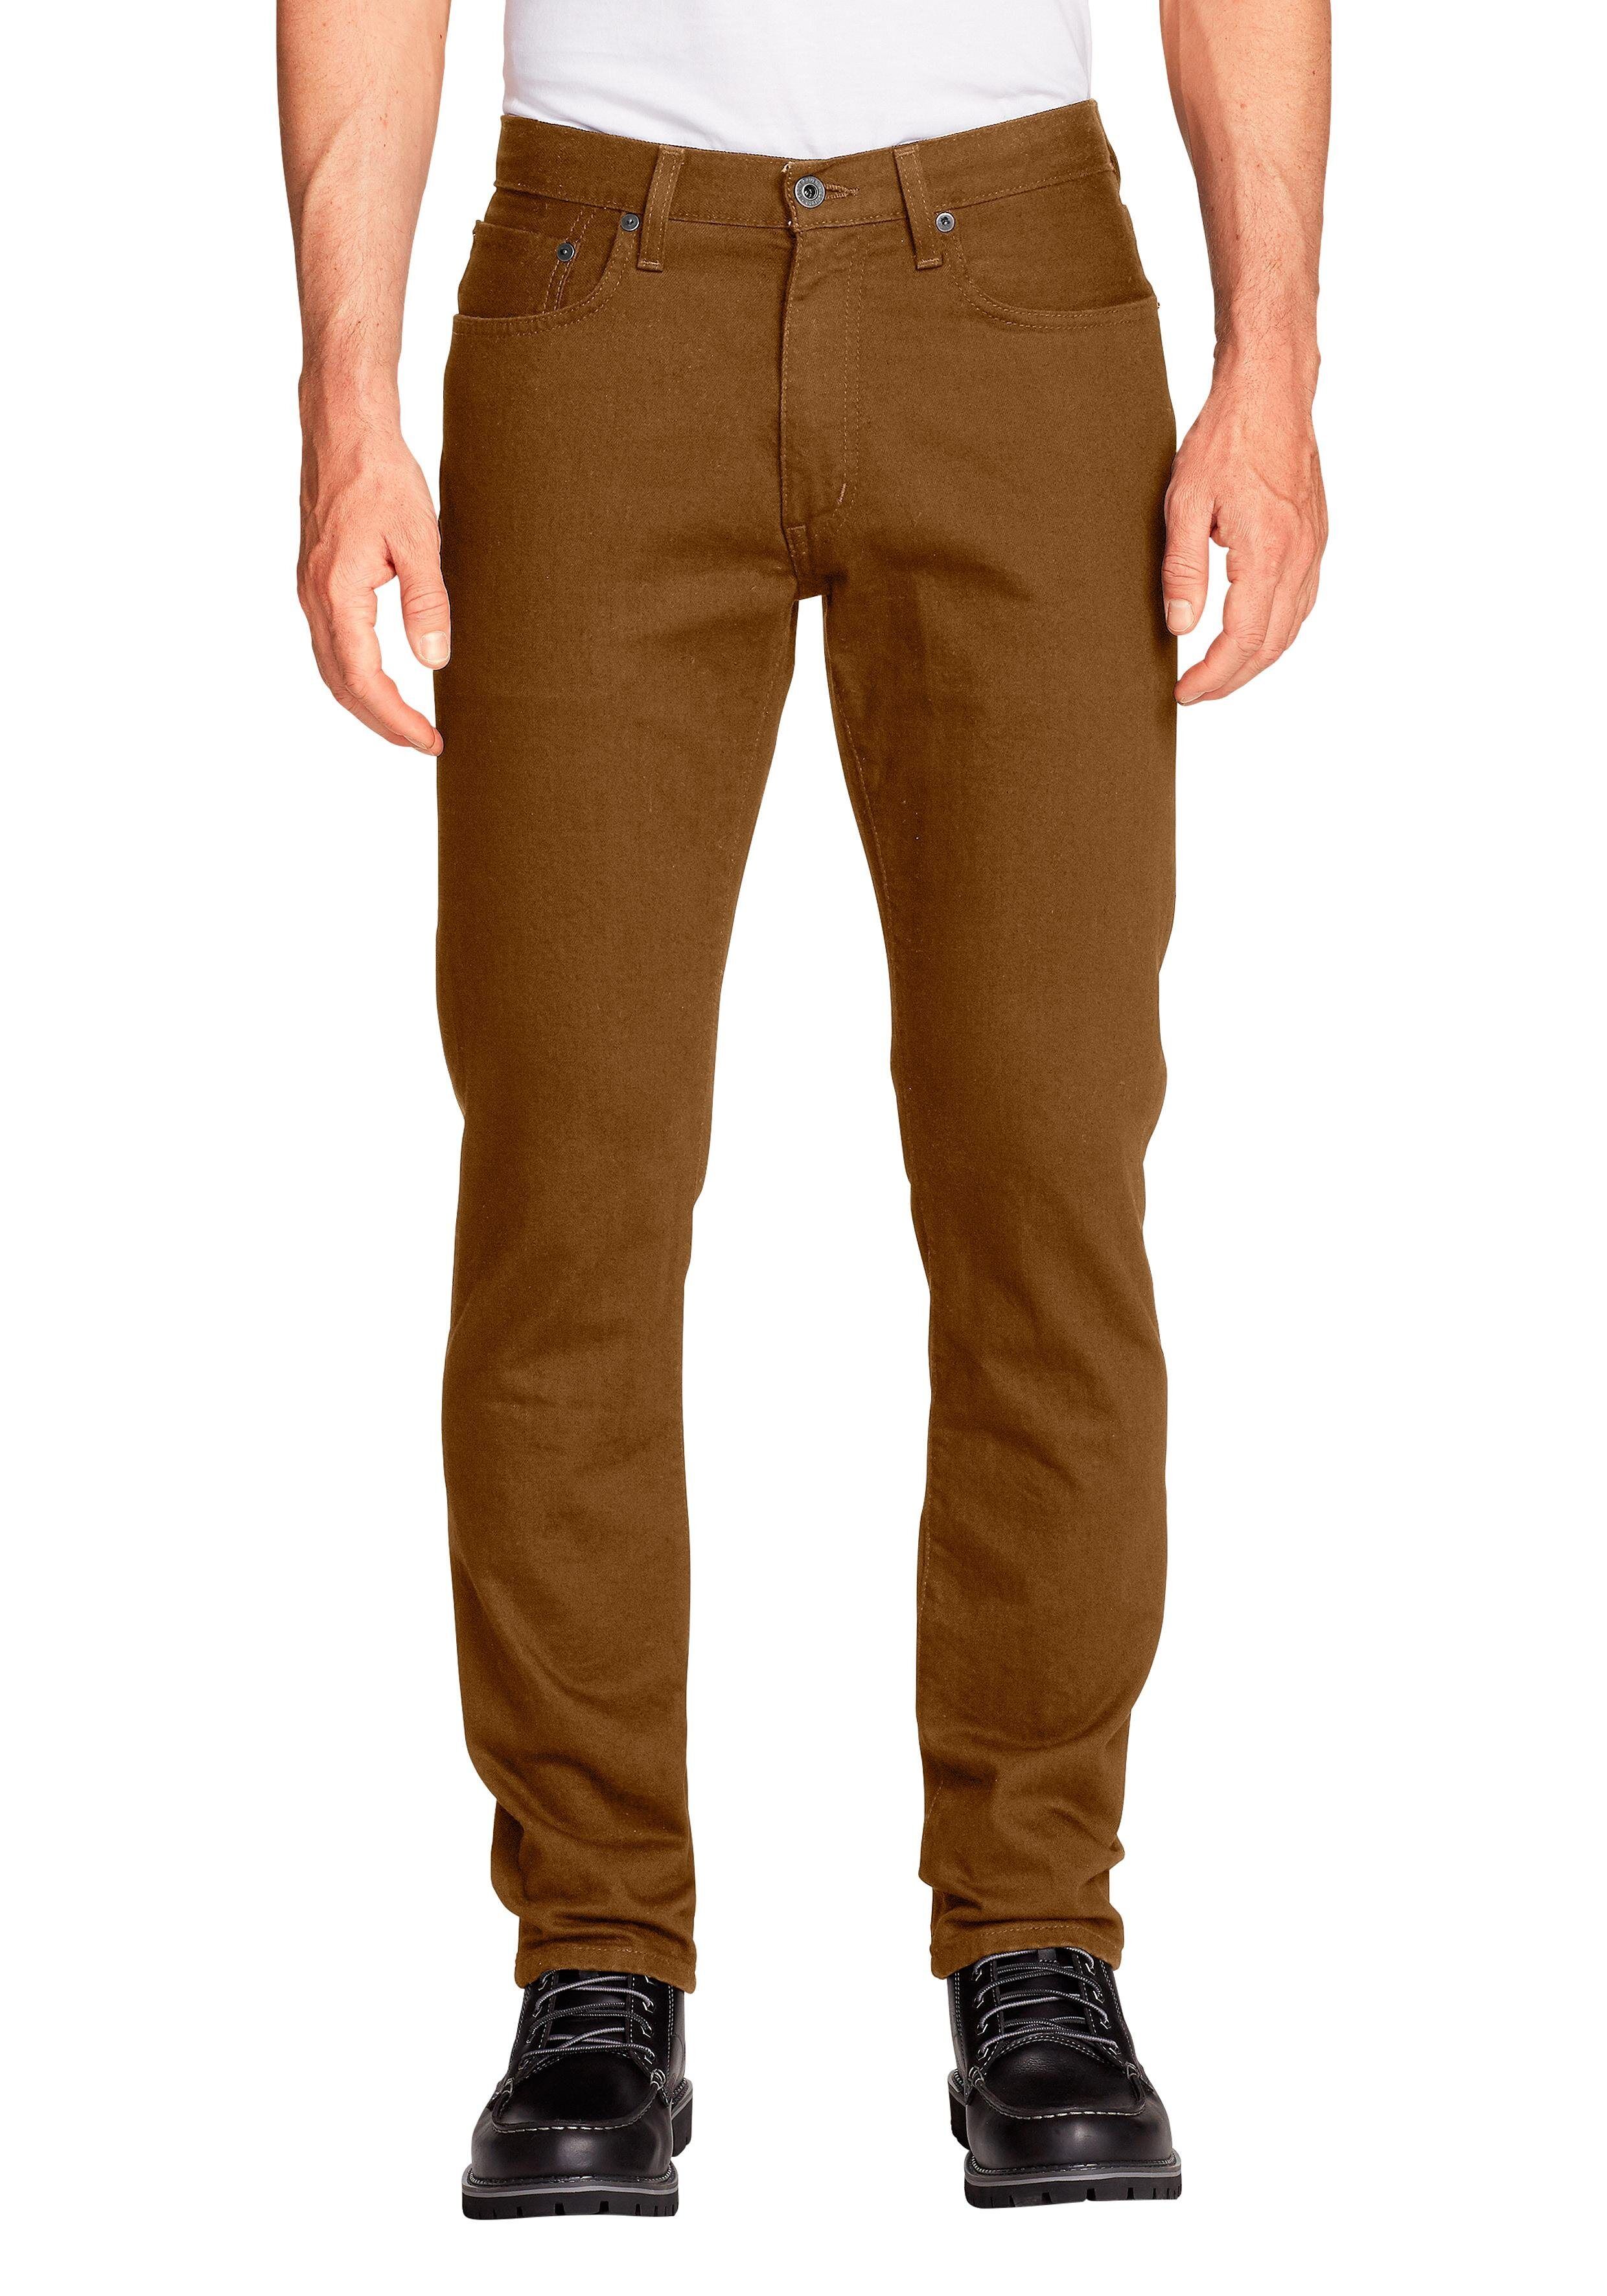 Eddie Bauer 5-Pocket-Jeans Flex - Slim Fit, braun